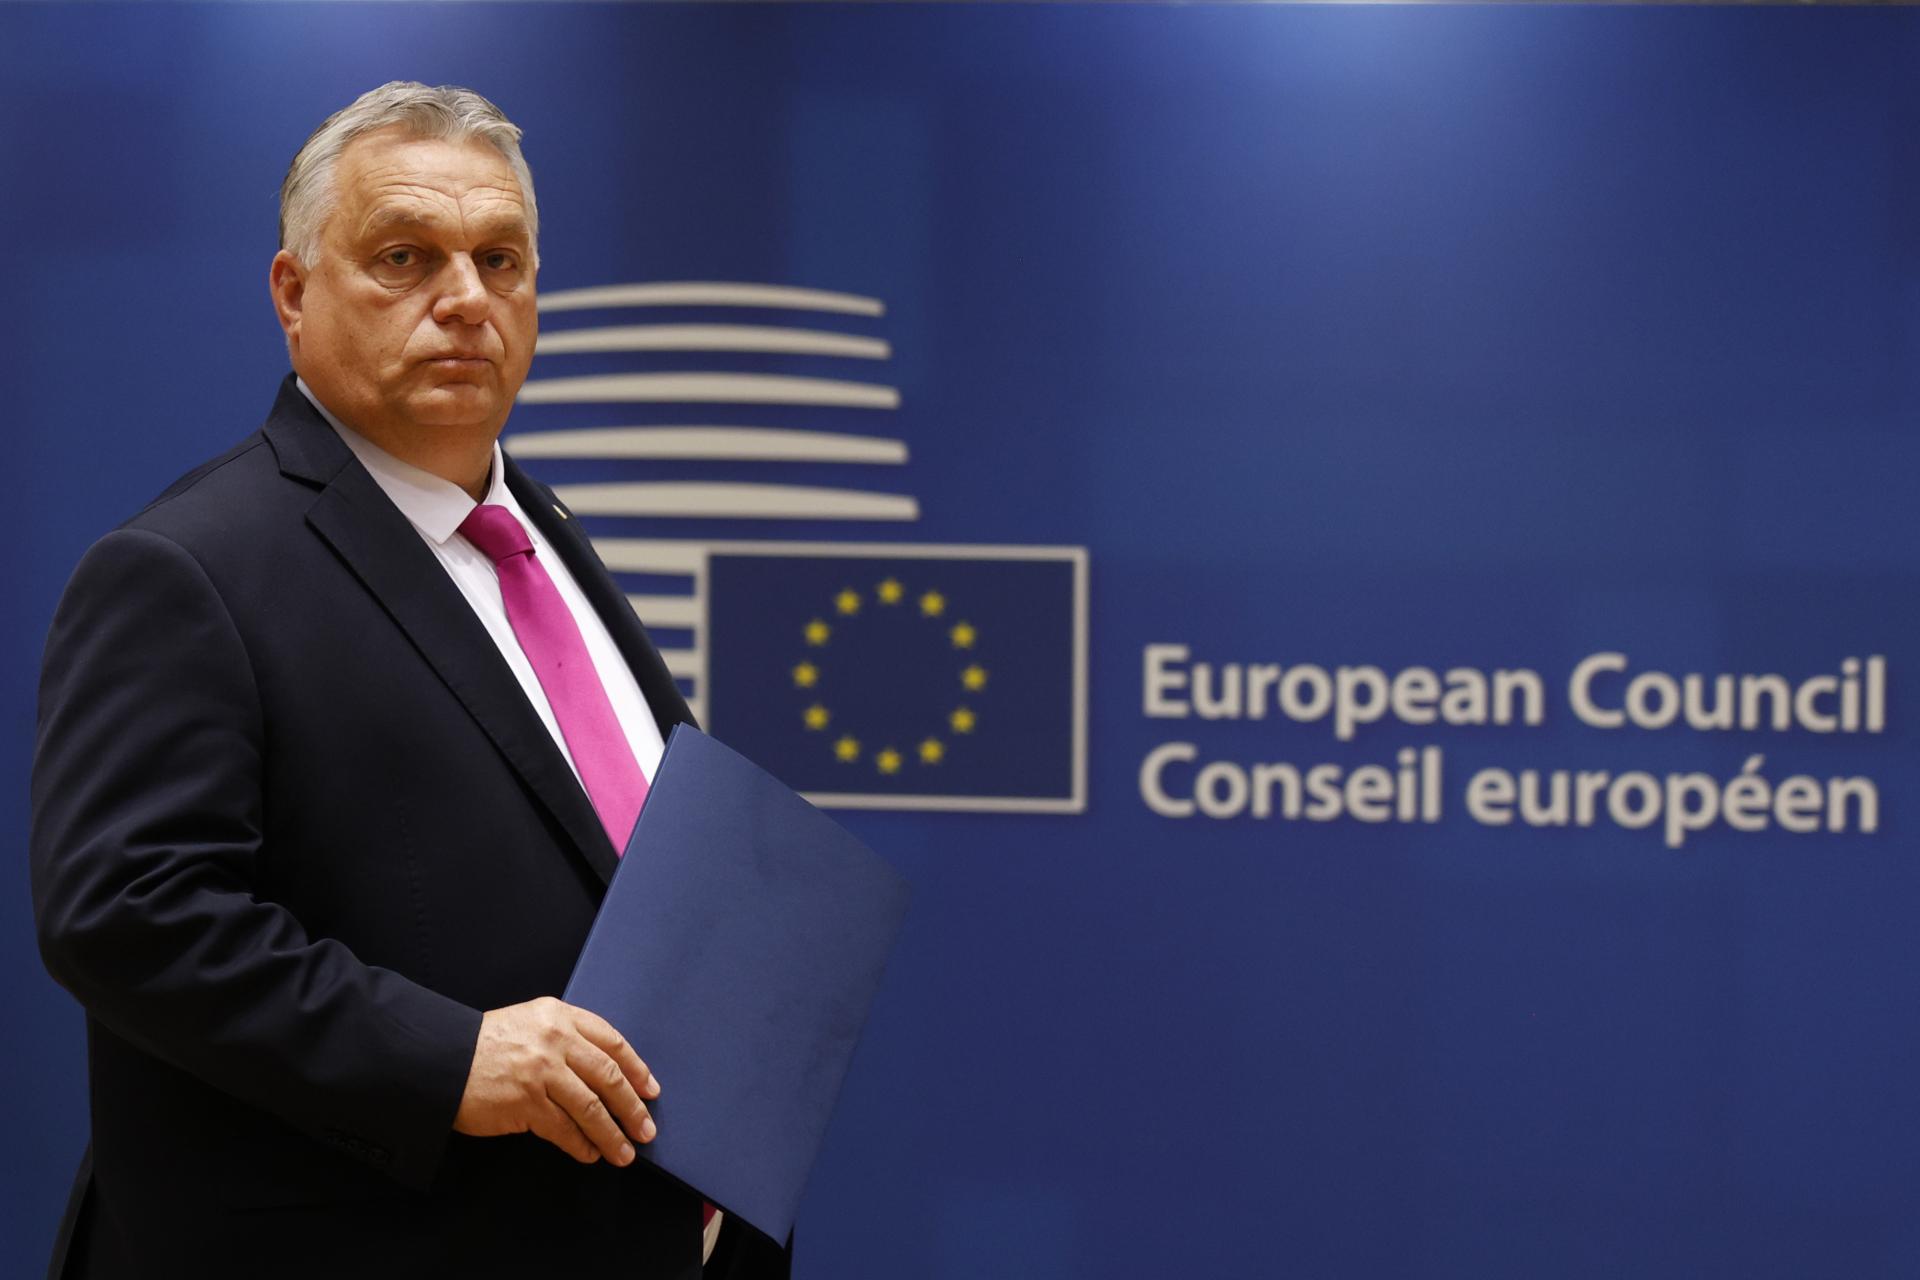 Tieňová vláda opozície tvrdí, že Orbán chce vyviesť Maďarsko z Európskej únie